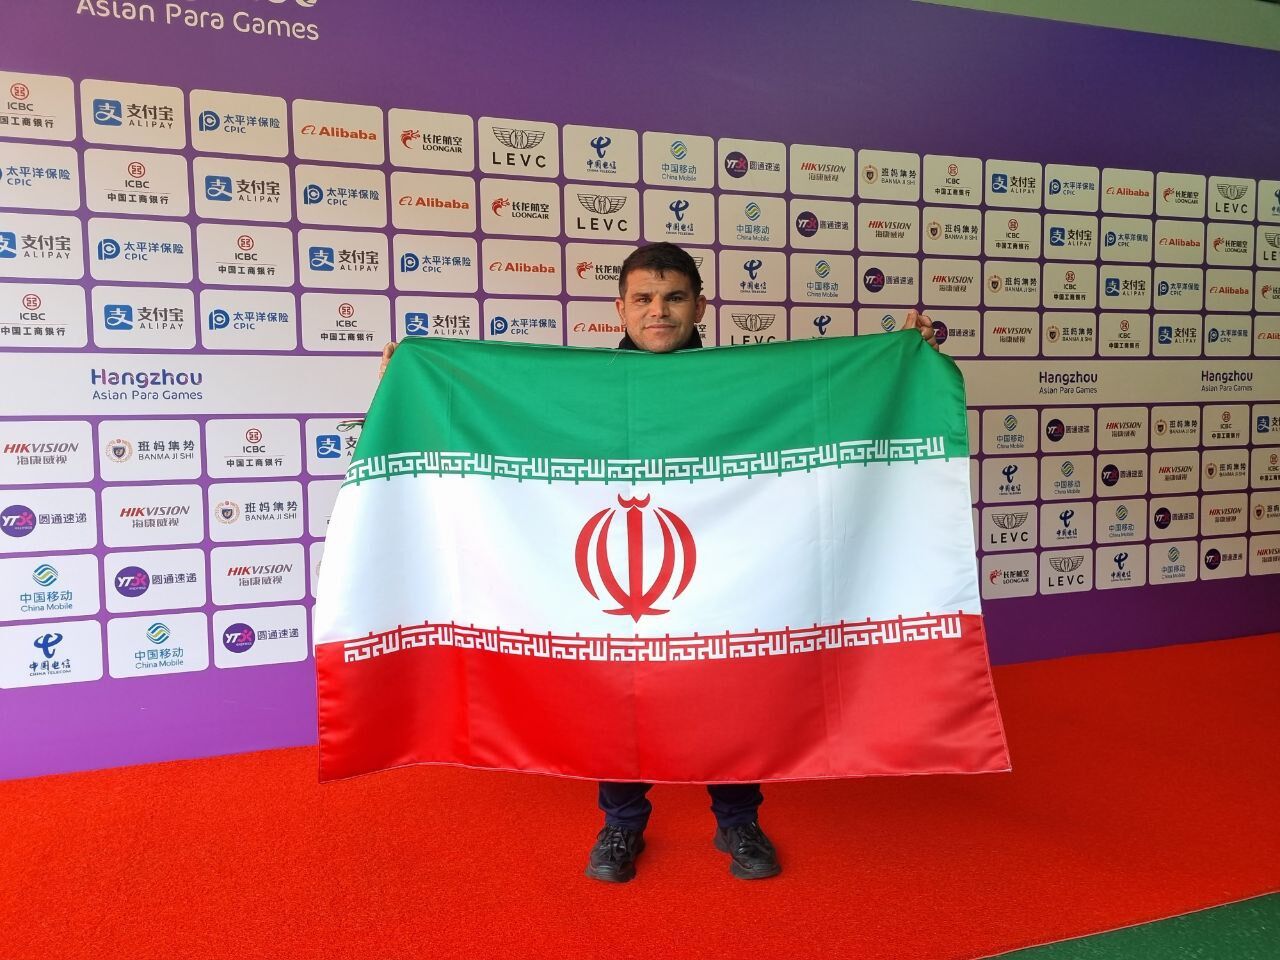 صادق بیت سیاح نایب قهرمان شد/ ورزشکار چینی همه رکوردها را شکست و طلا گرفت